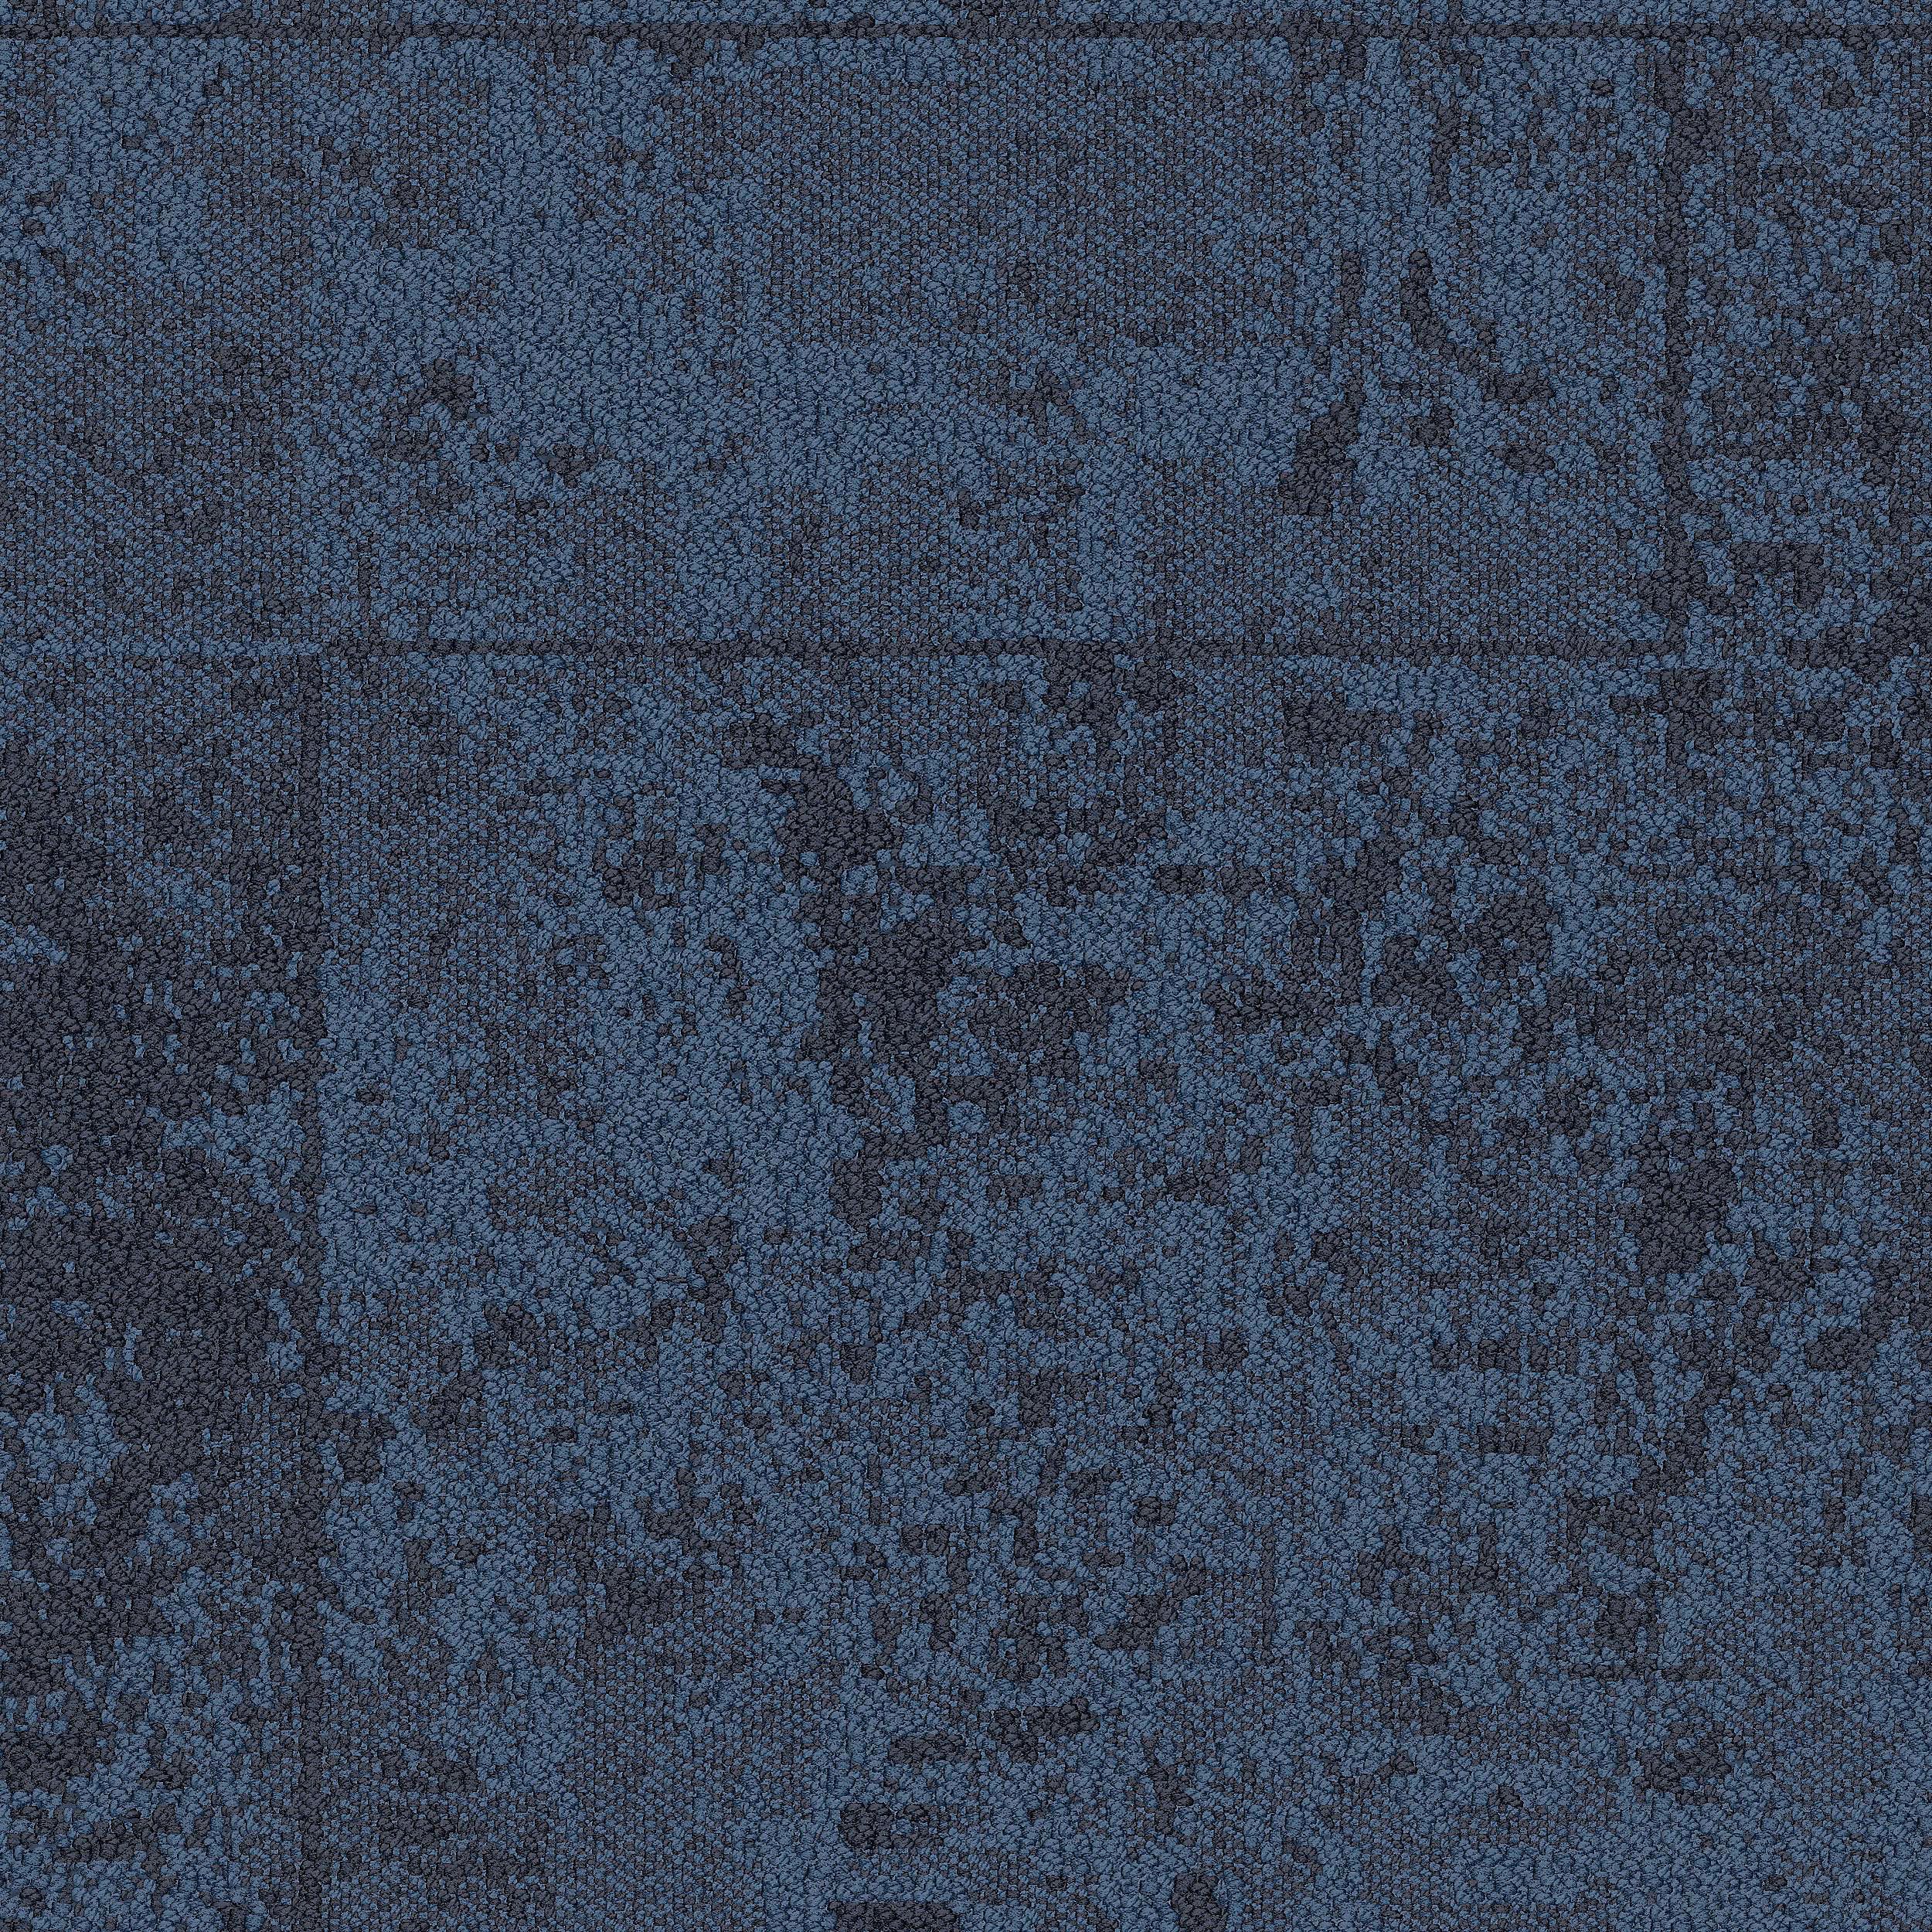 B603 Carpet Tile In Pacific imagen número 2